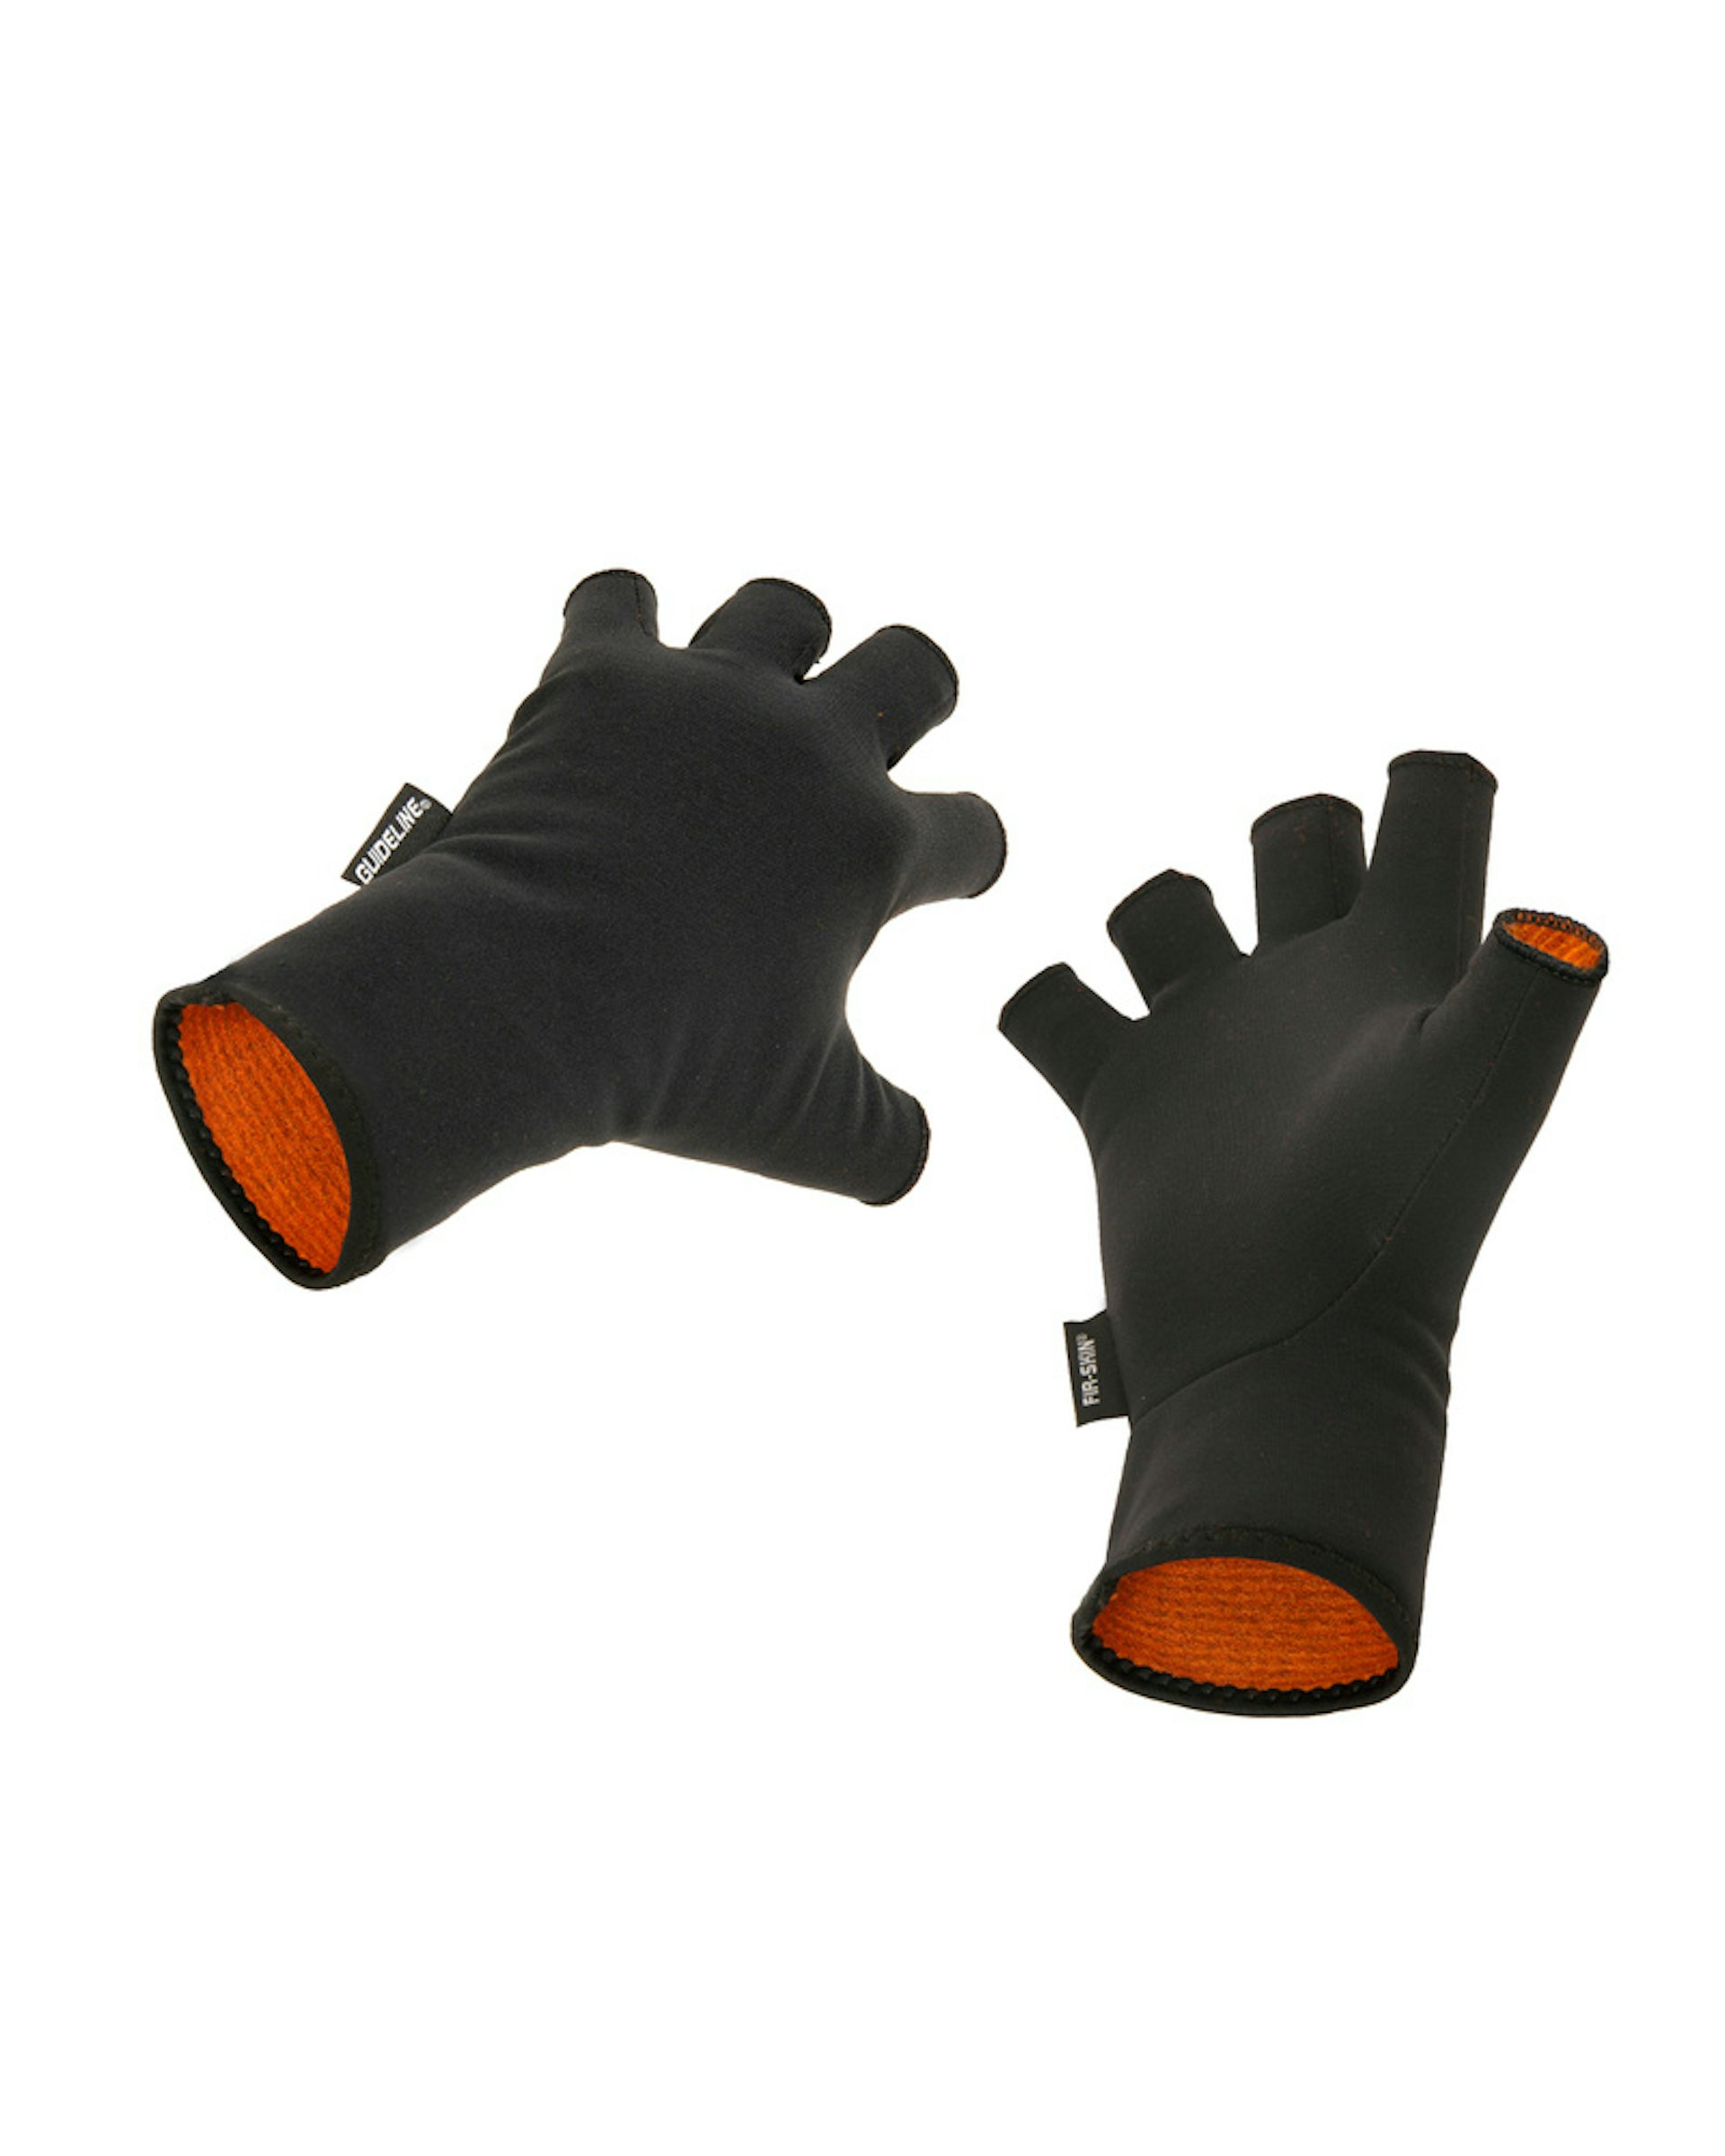 FIR-SKIN CGX Fingerless Gloves XXL (bilde 1 av 1)